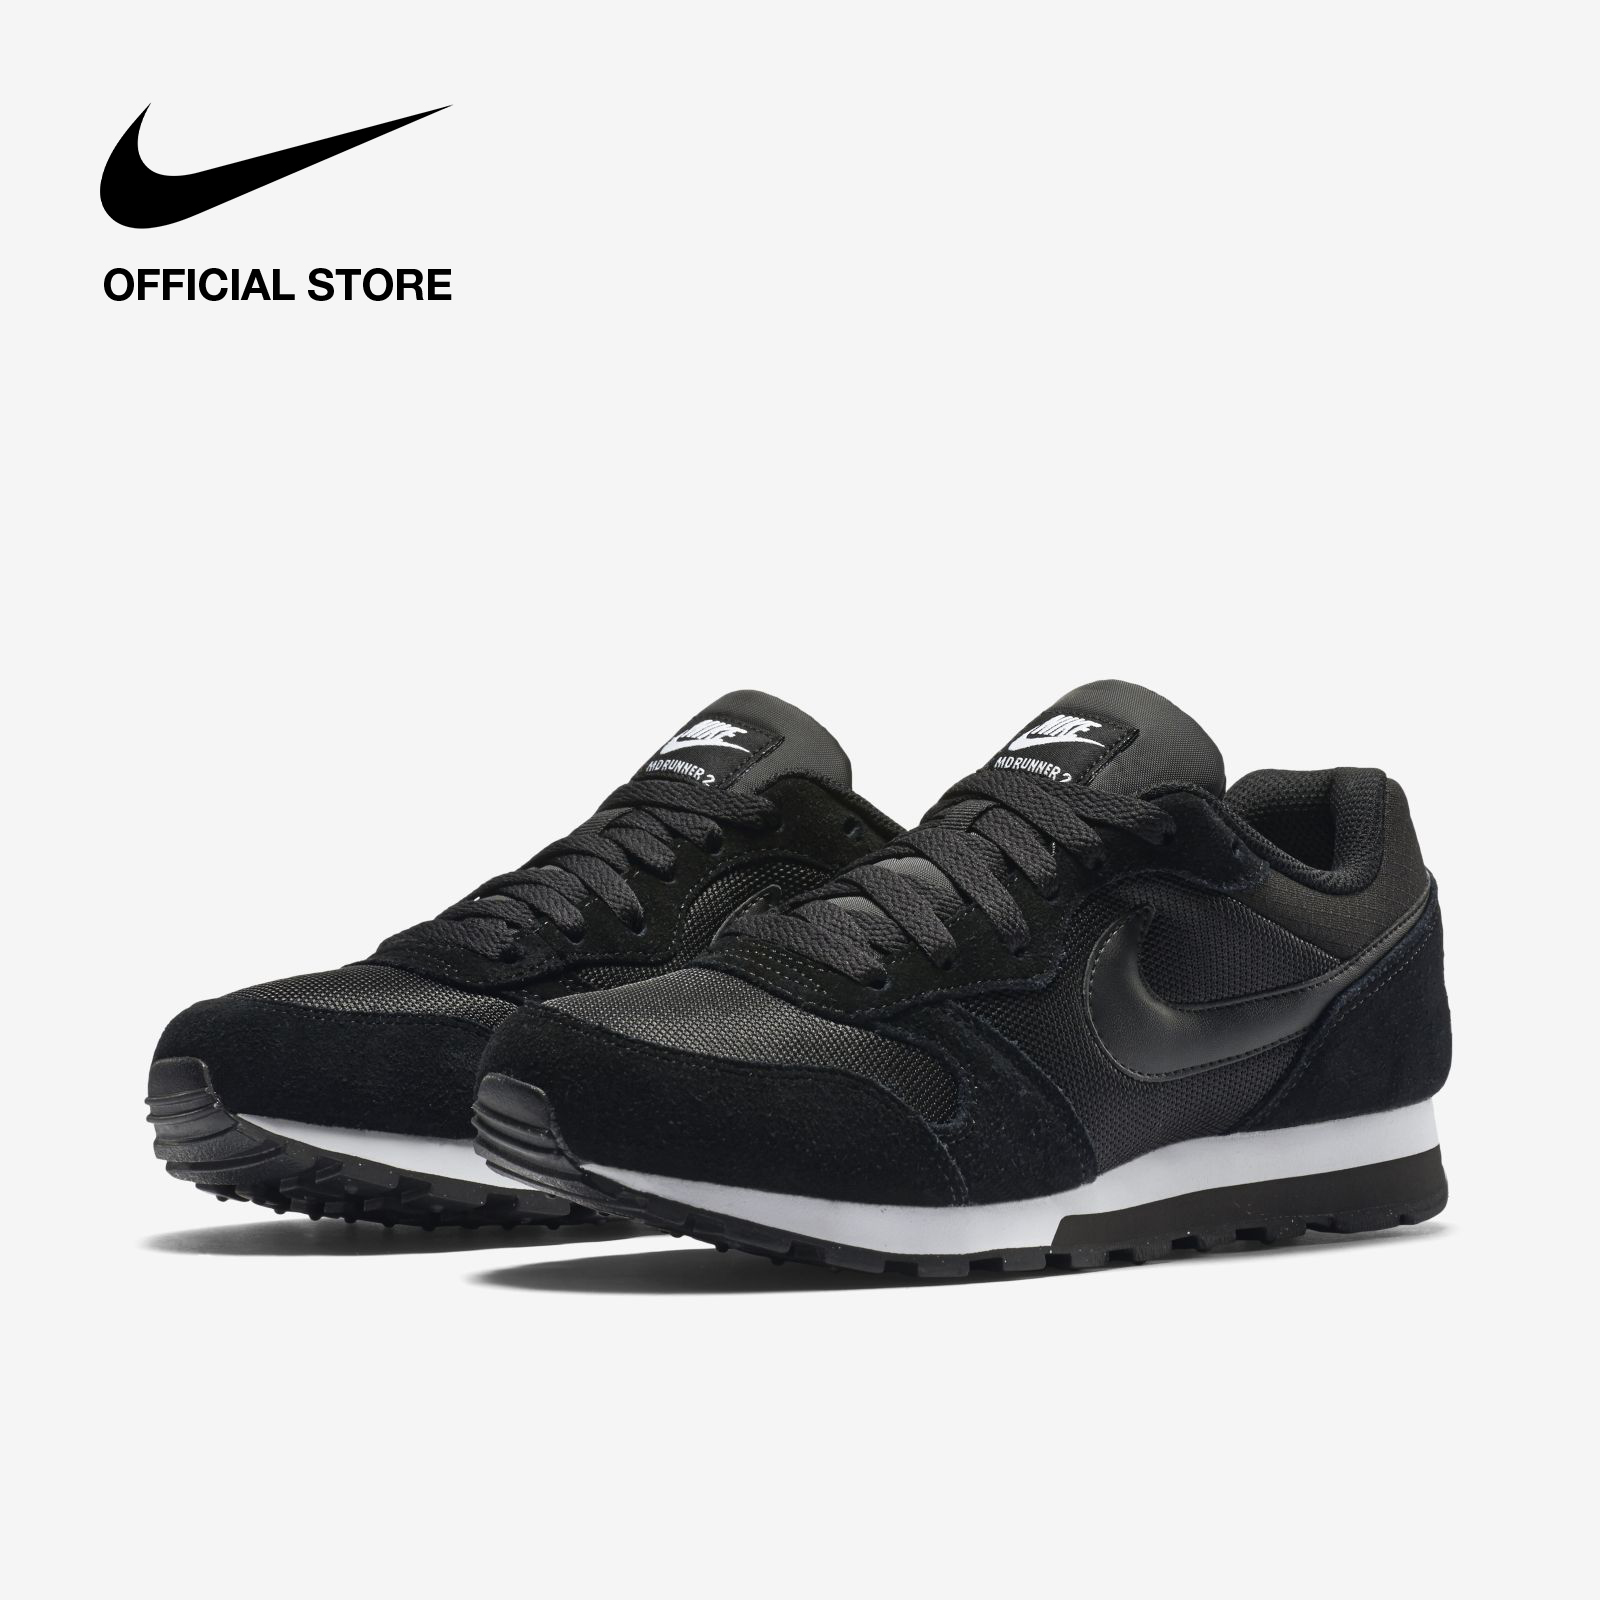 Nike Women's MD Runner 2 Shoes - Black รองเท้าผู้หญิง Nike MD Runner 2 - สีดำ